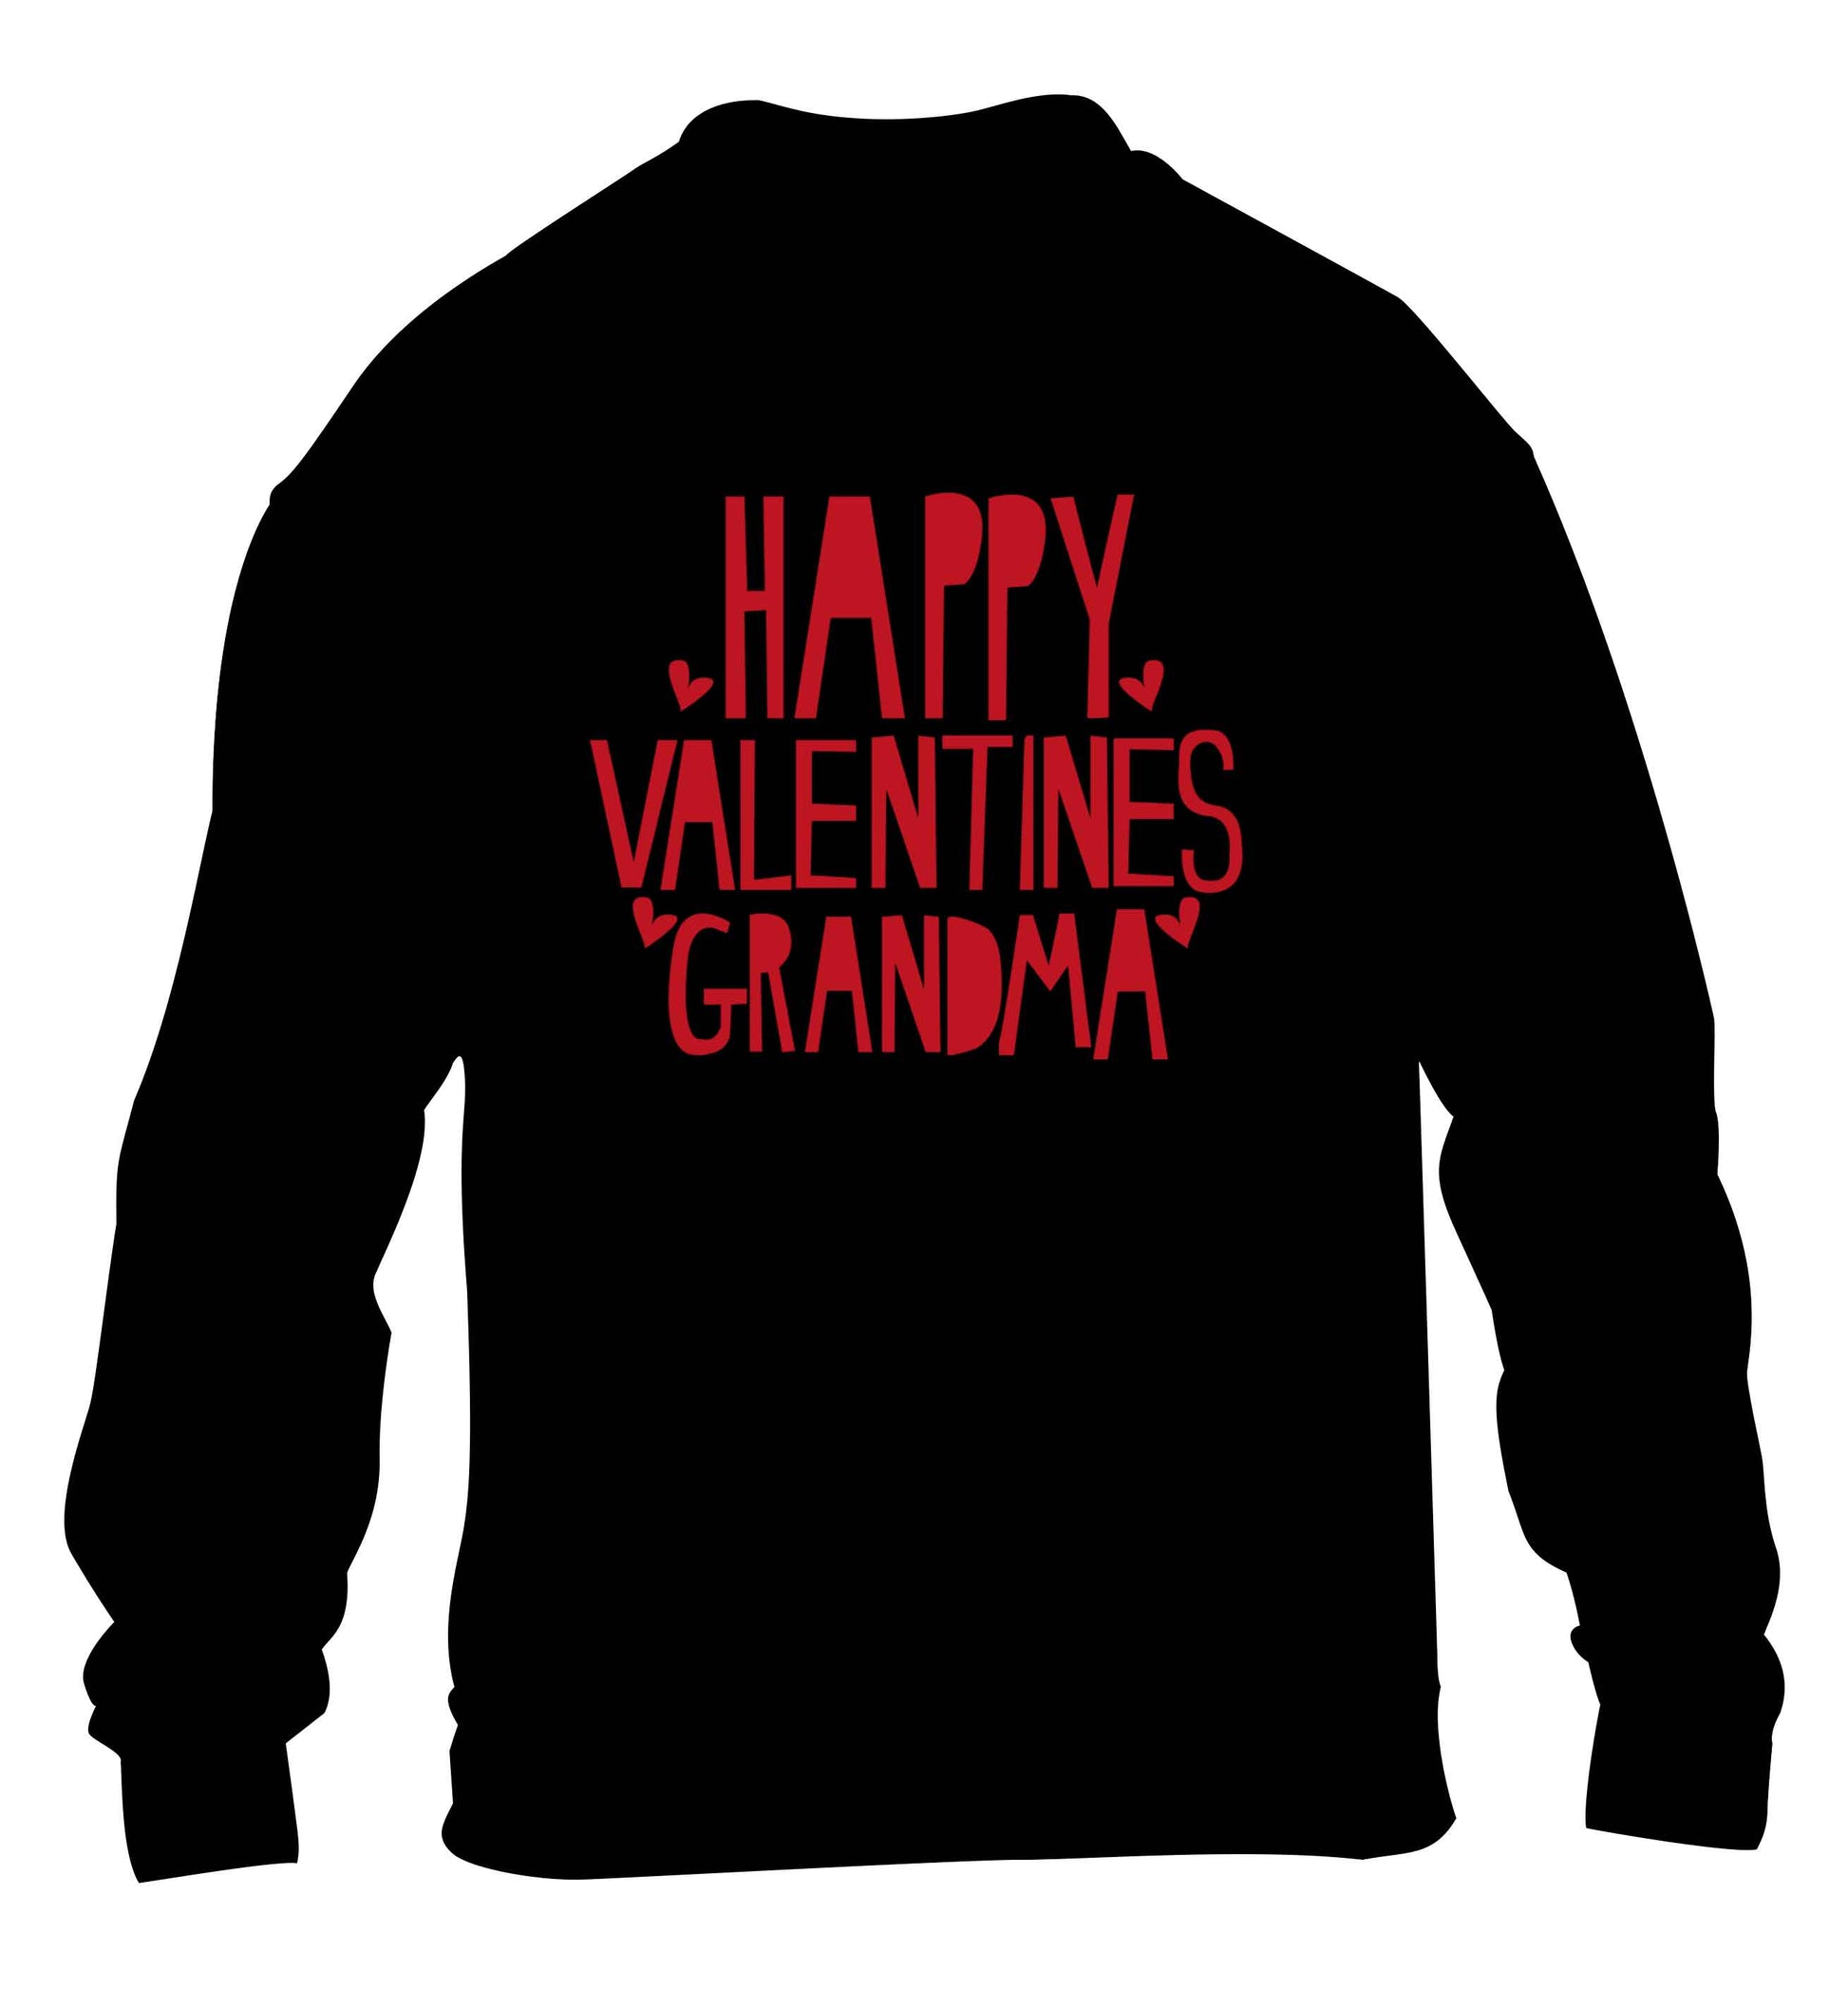 Happy valentines grandma children's black sweater 12-13 Years